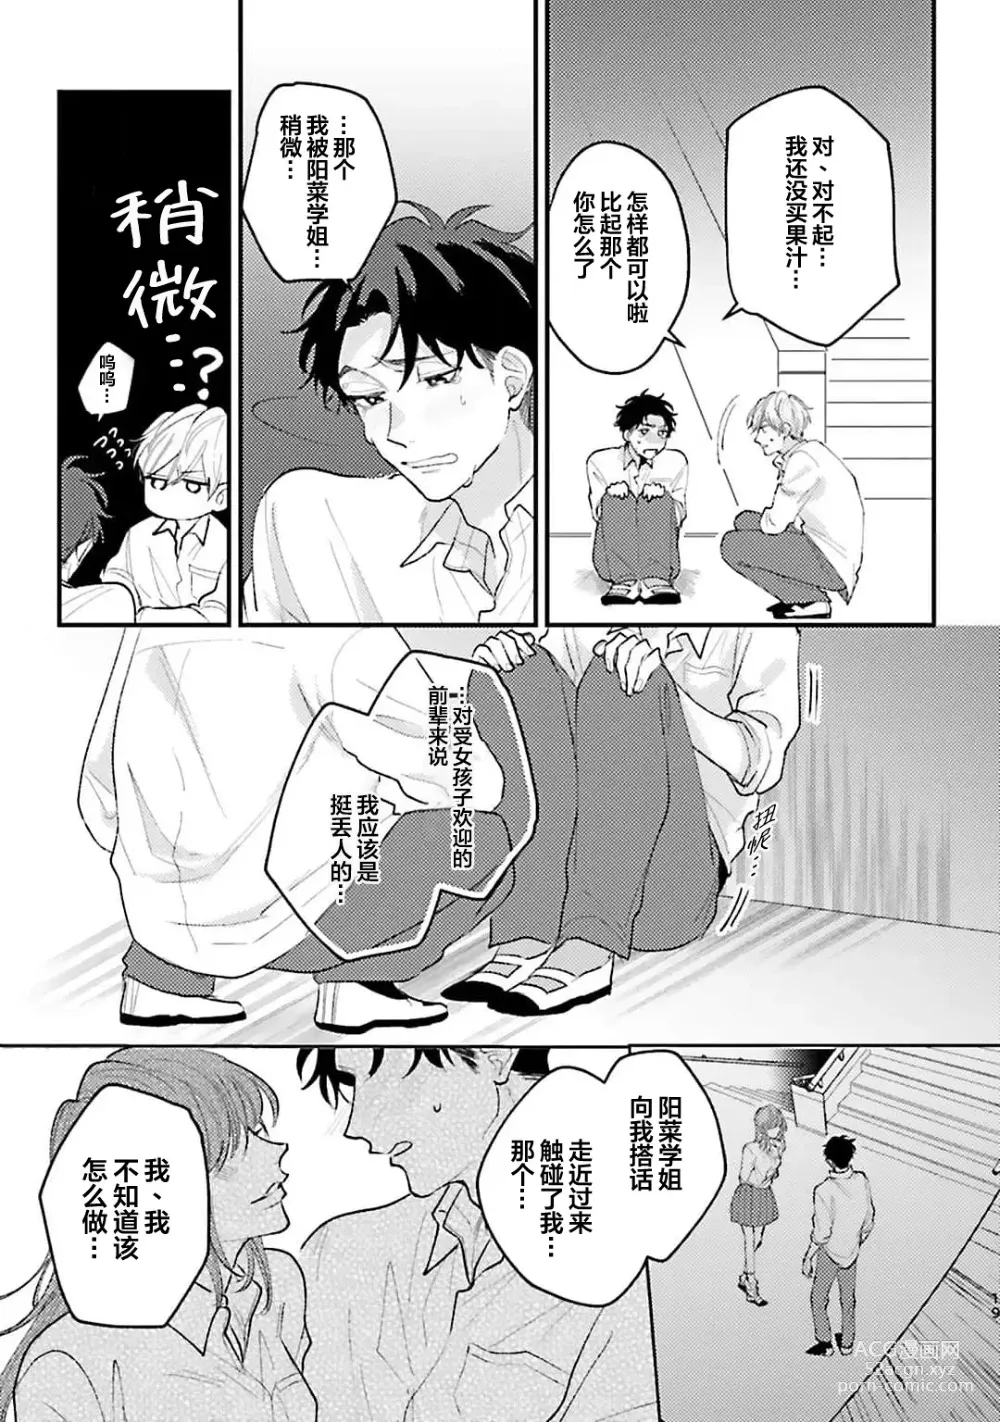 Page 21 of manga 眼泪与爱恋、都只属于我